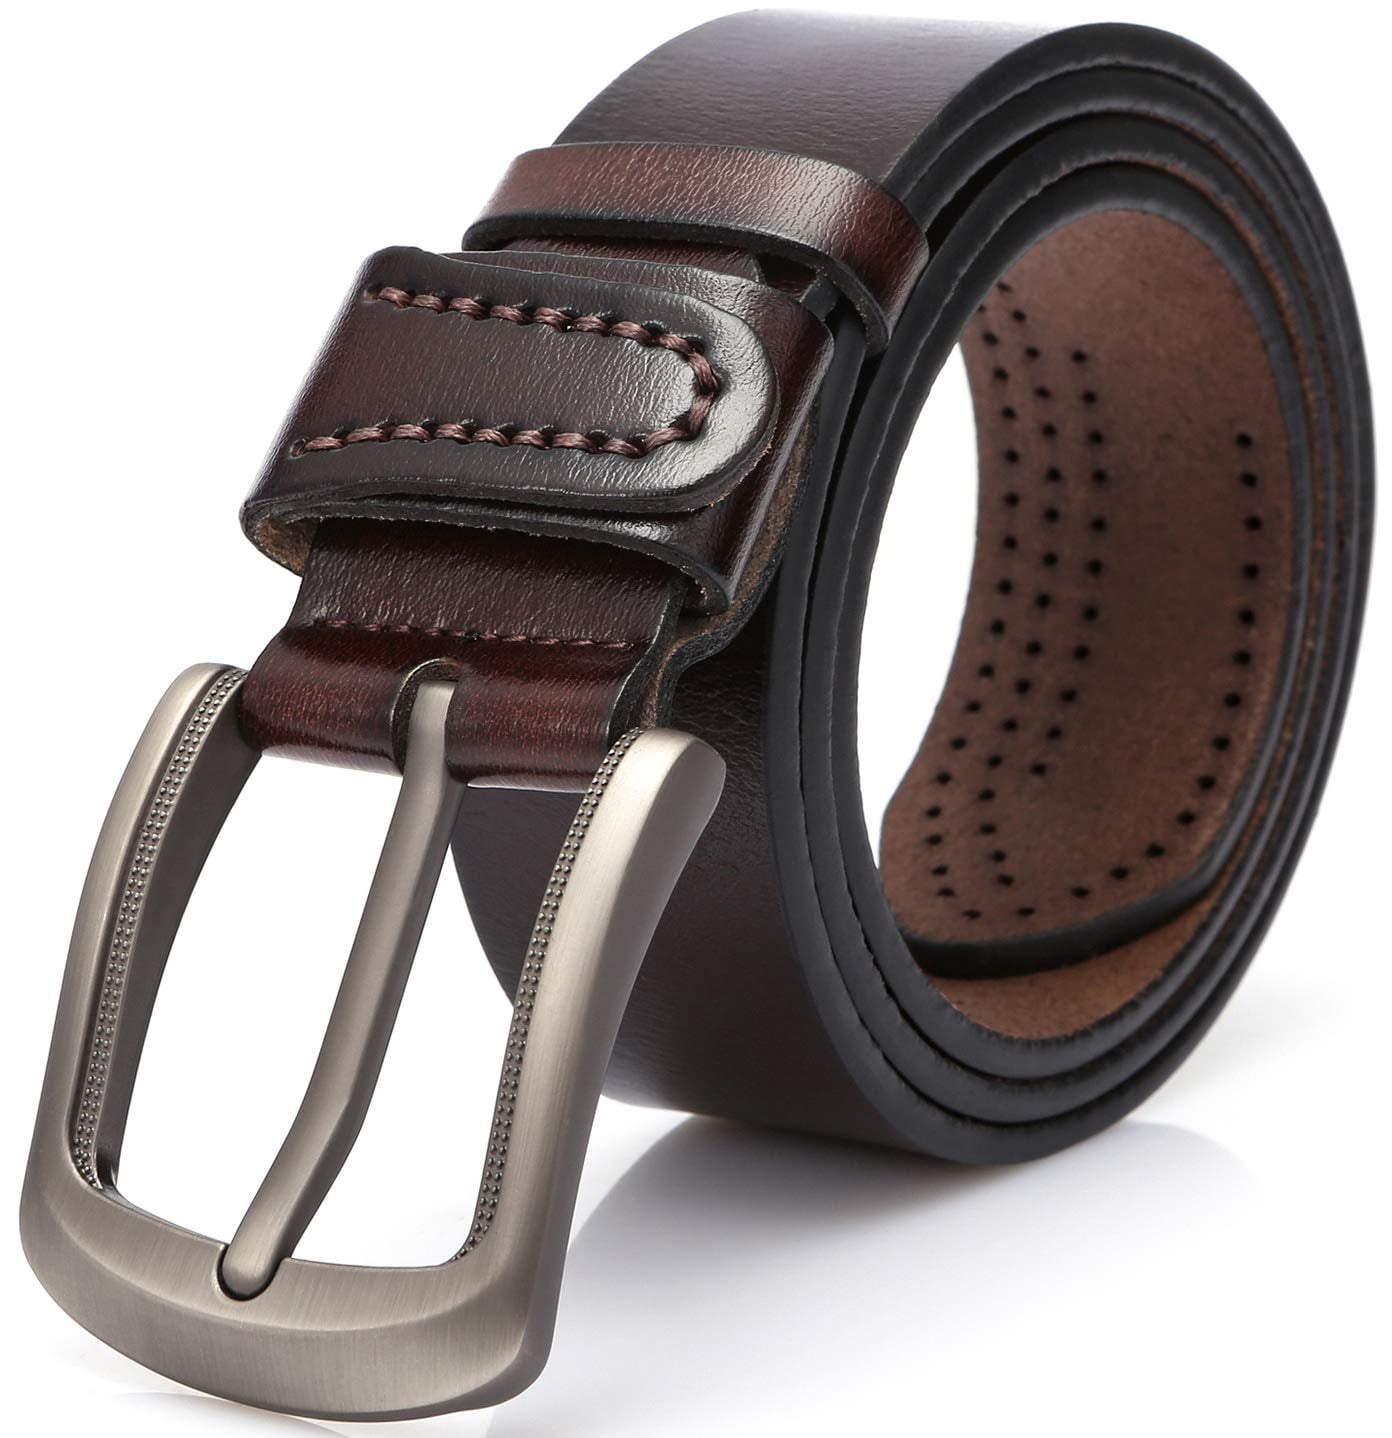 Leather Belts for Men 1.5